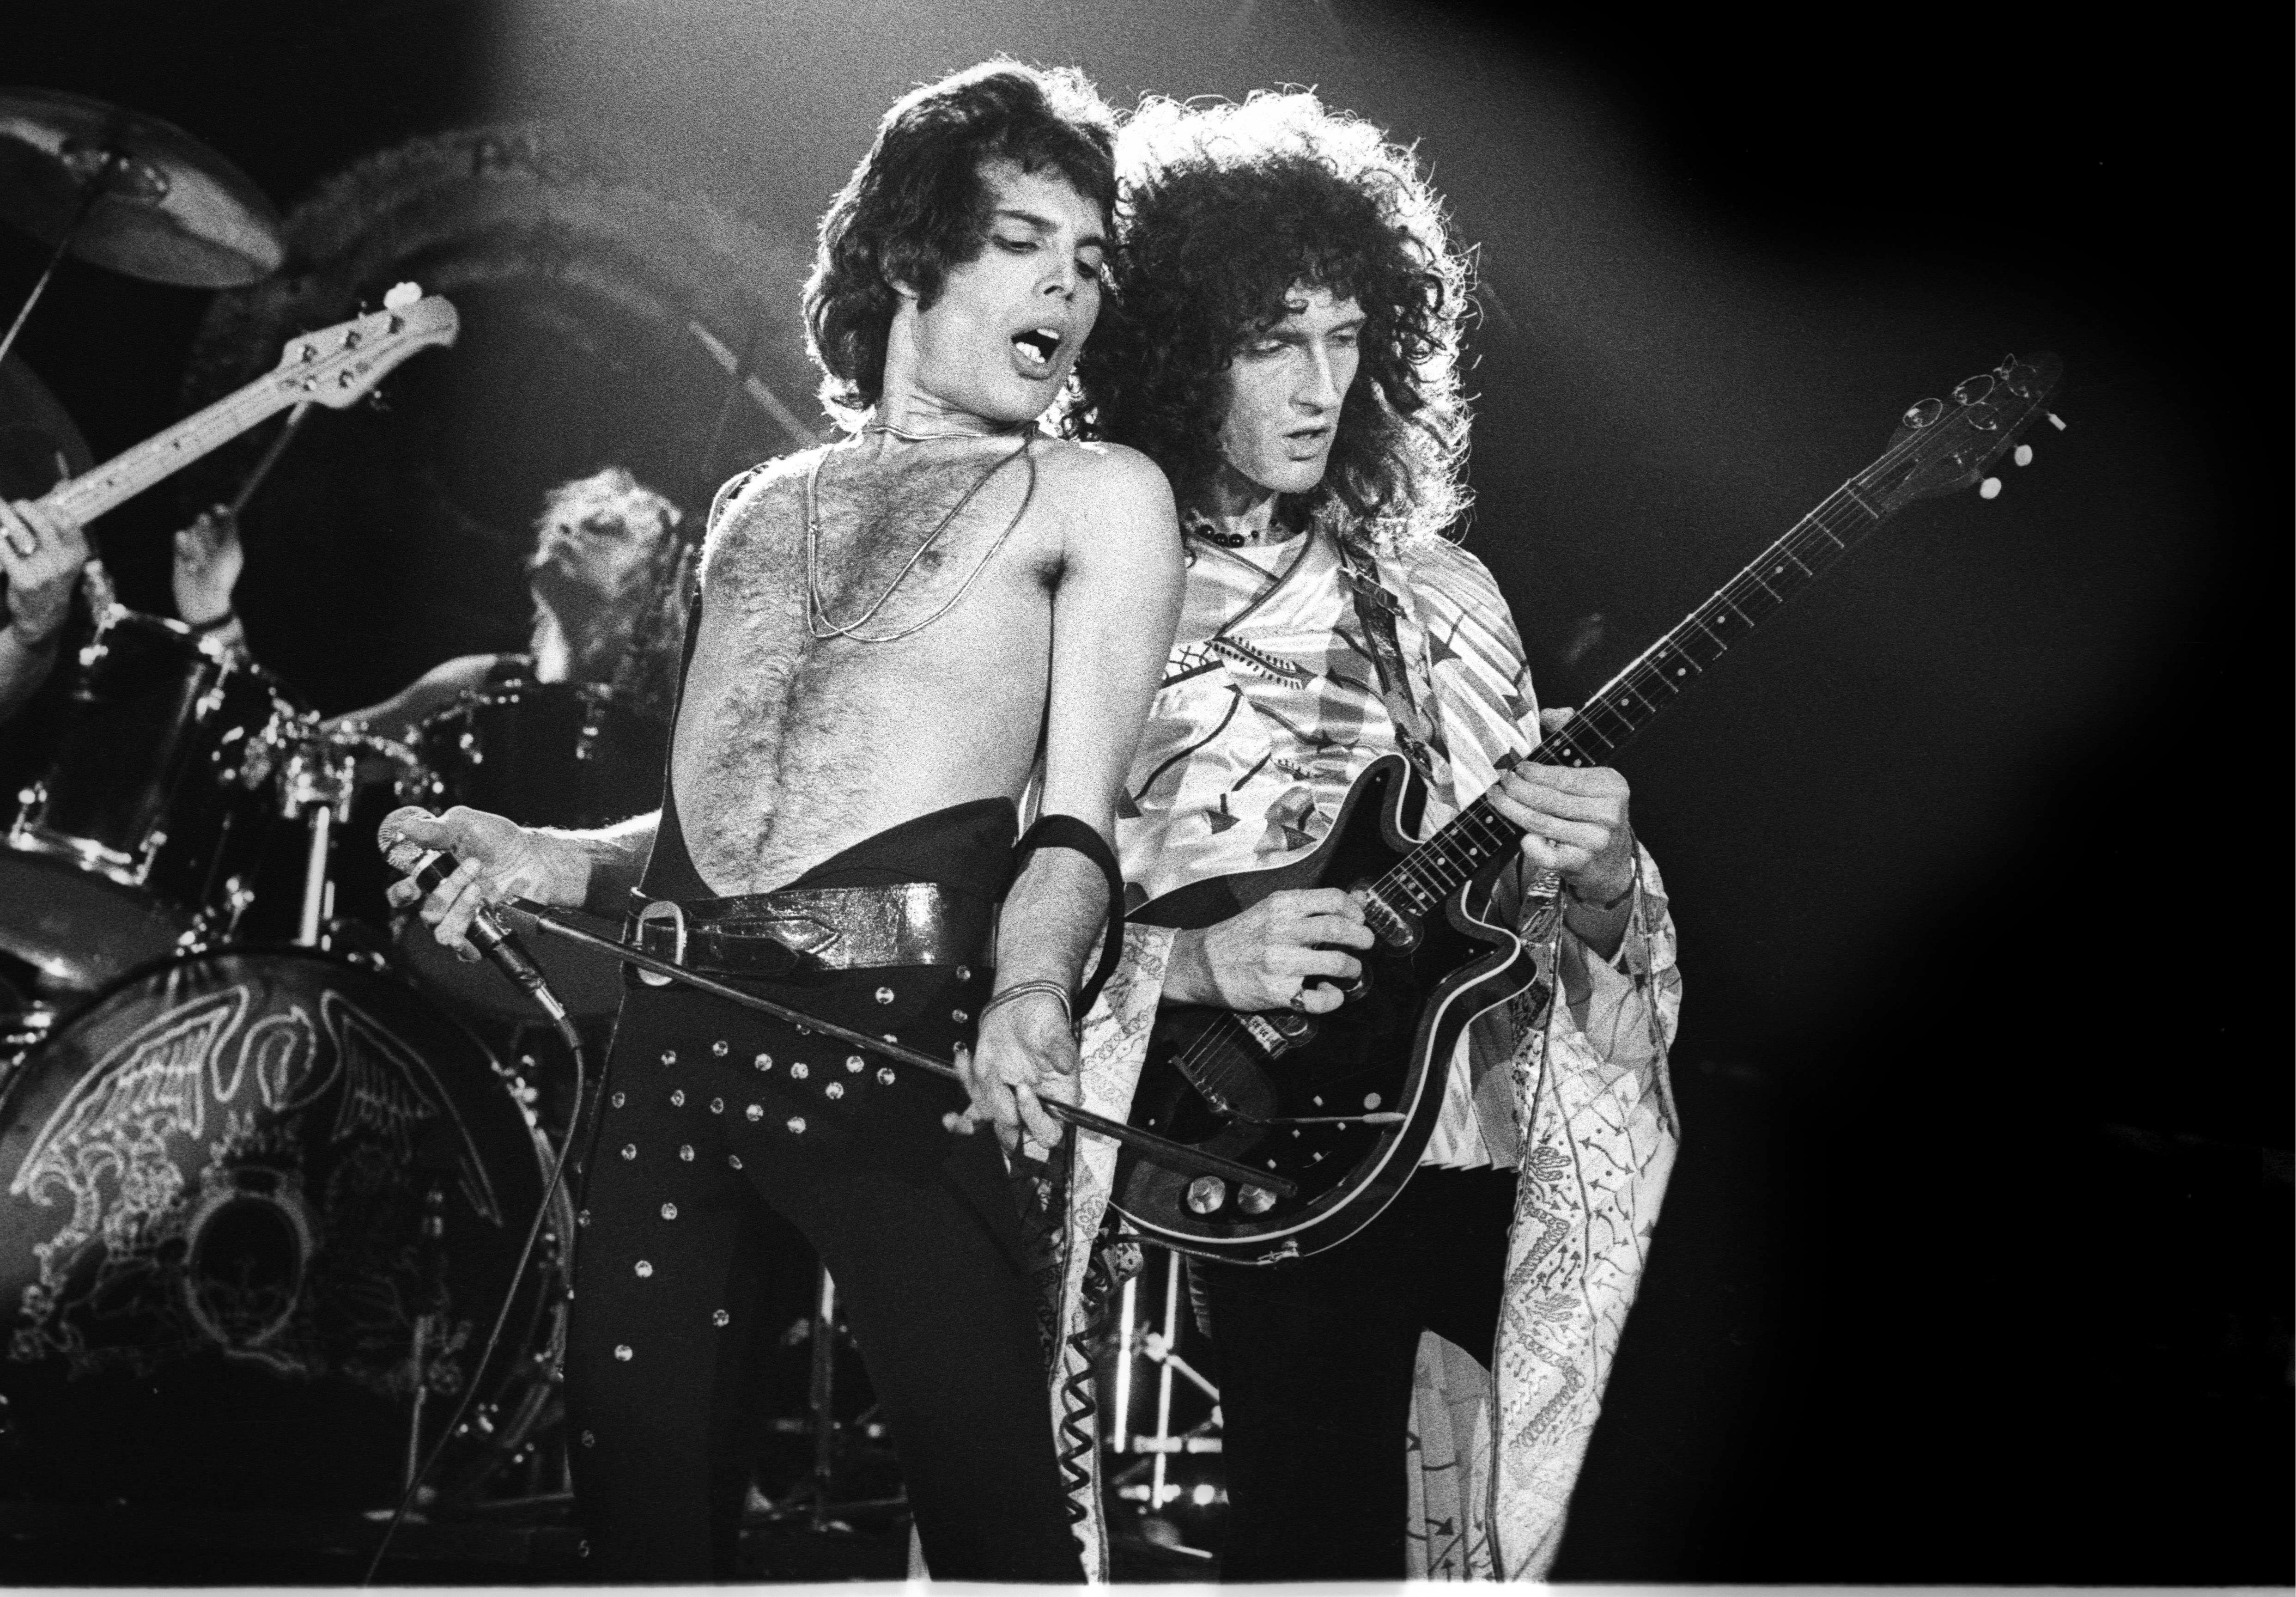 Группа квин песни фредди. Группа Queen 70s. Брайан Мэй на концерте Queen. Группа Квин фото. Группа Queen Фредди Меркьюри.